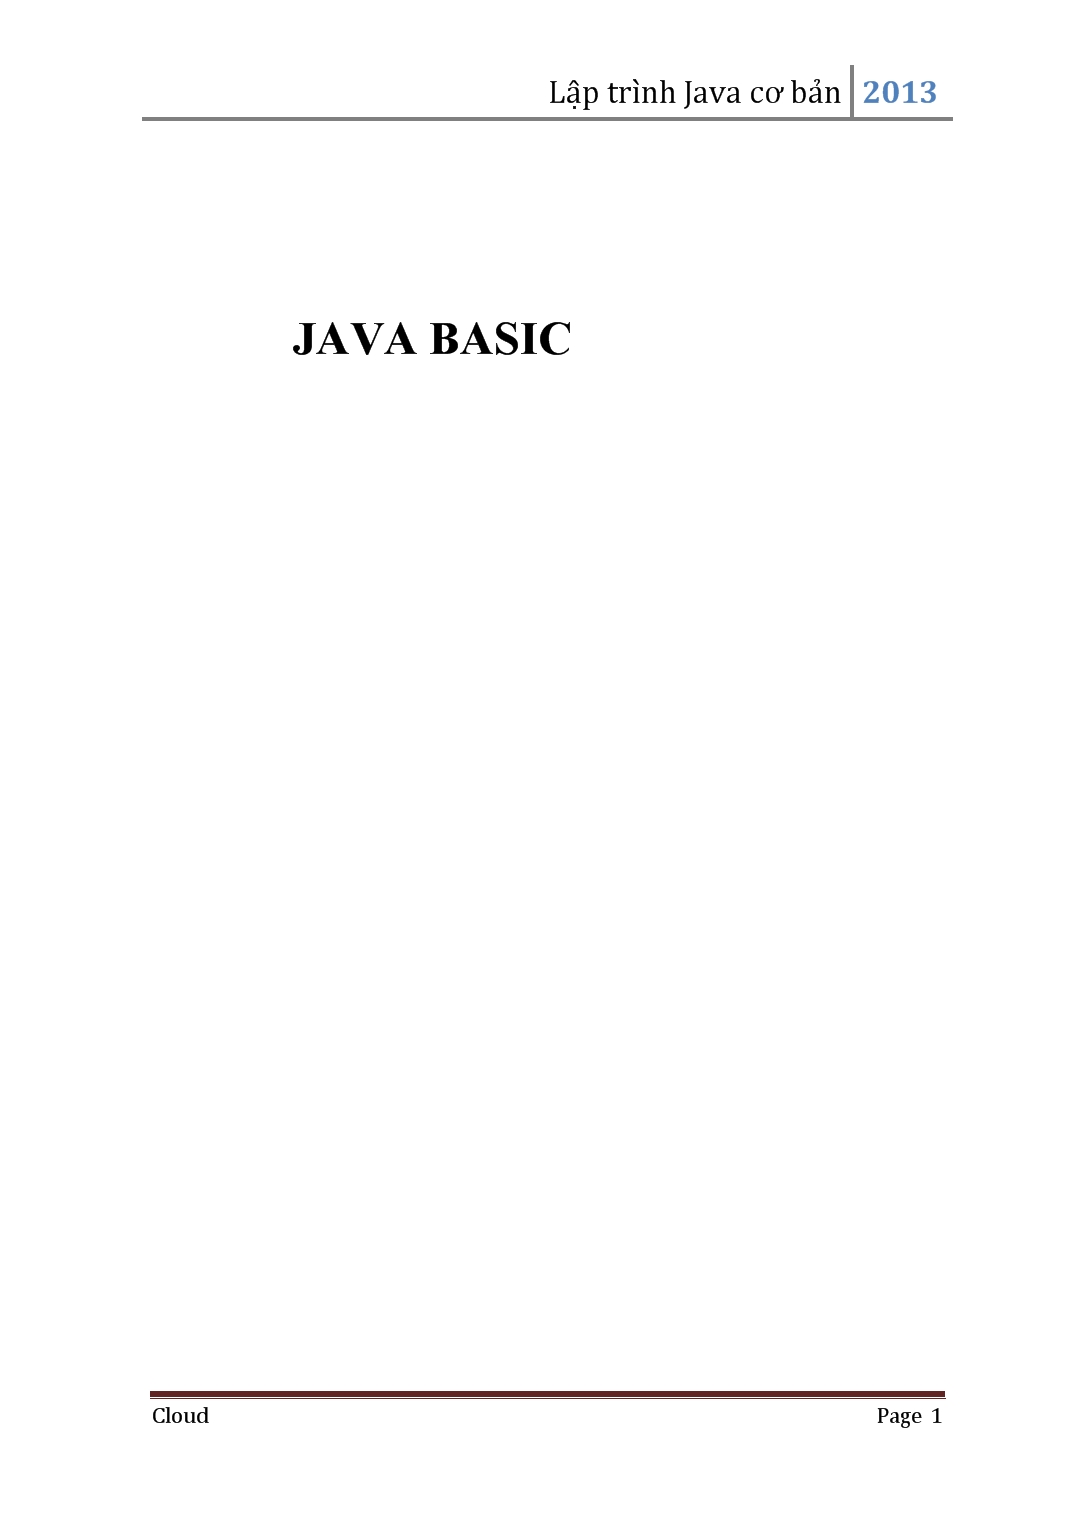 Giáo trình Lập trình Java cơ bản 2013 trang 1